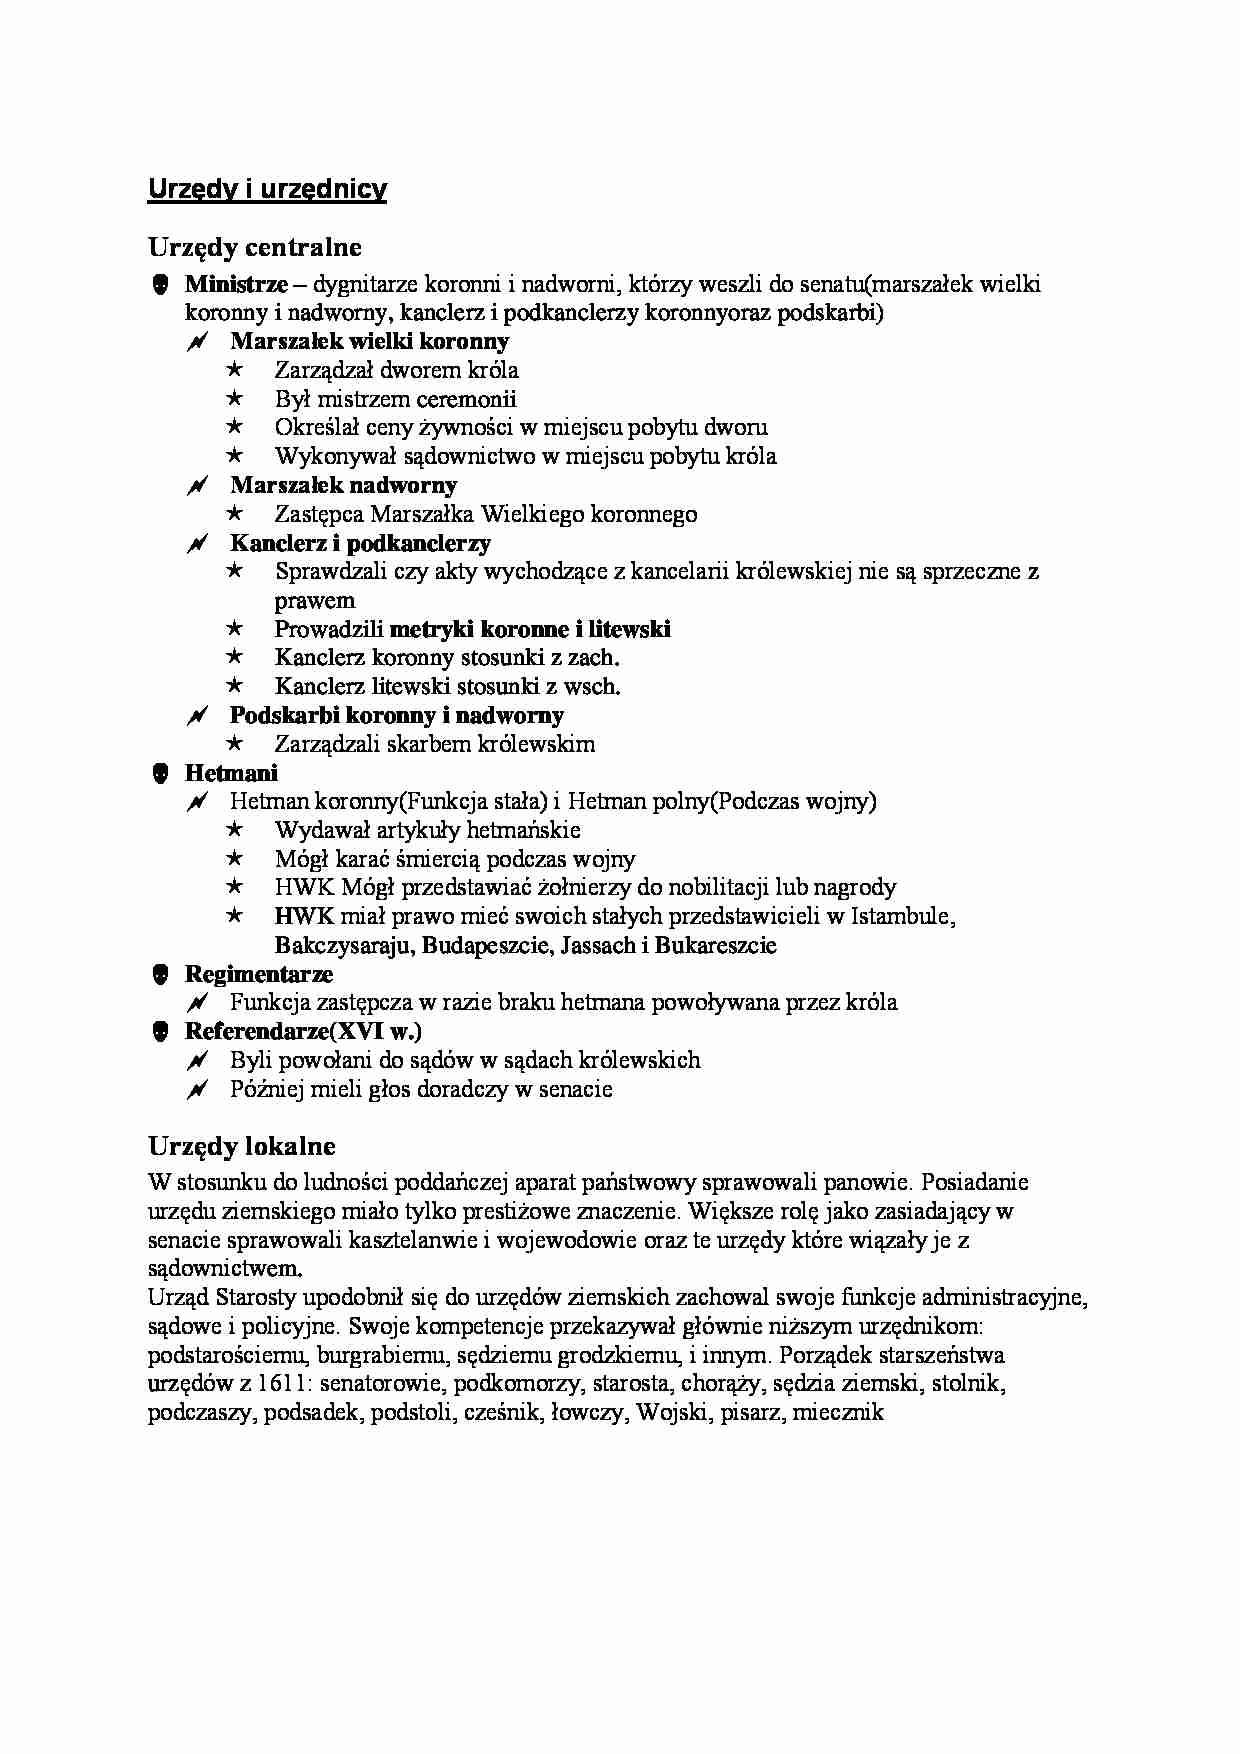 Rzeczpospolita szlachecka - Urzędy i urzędnicy - strona 1